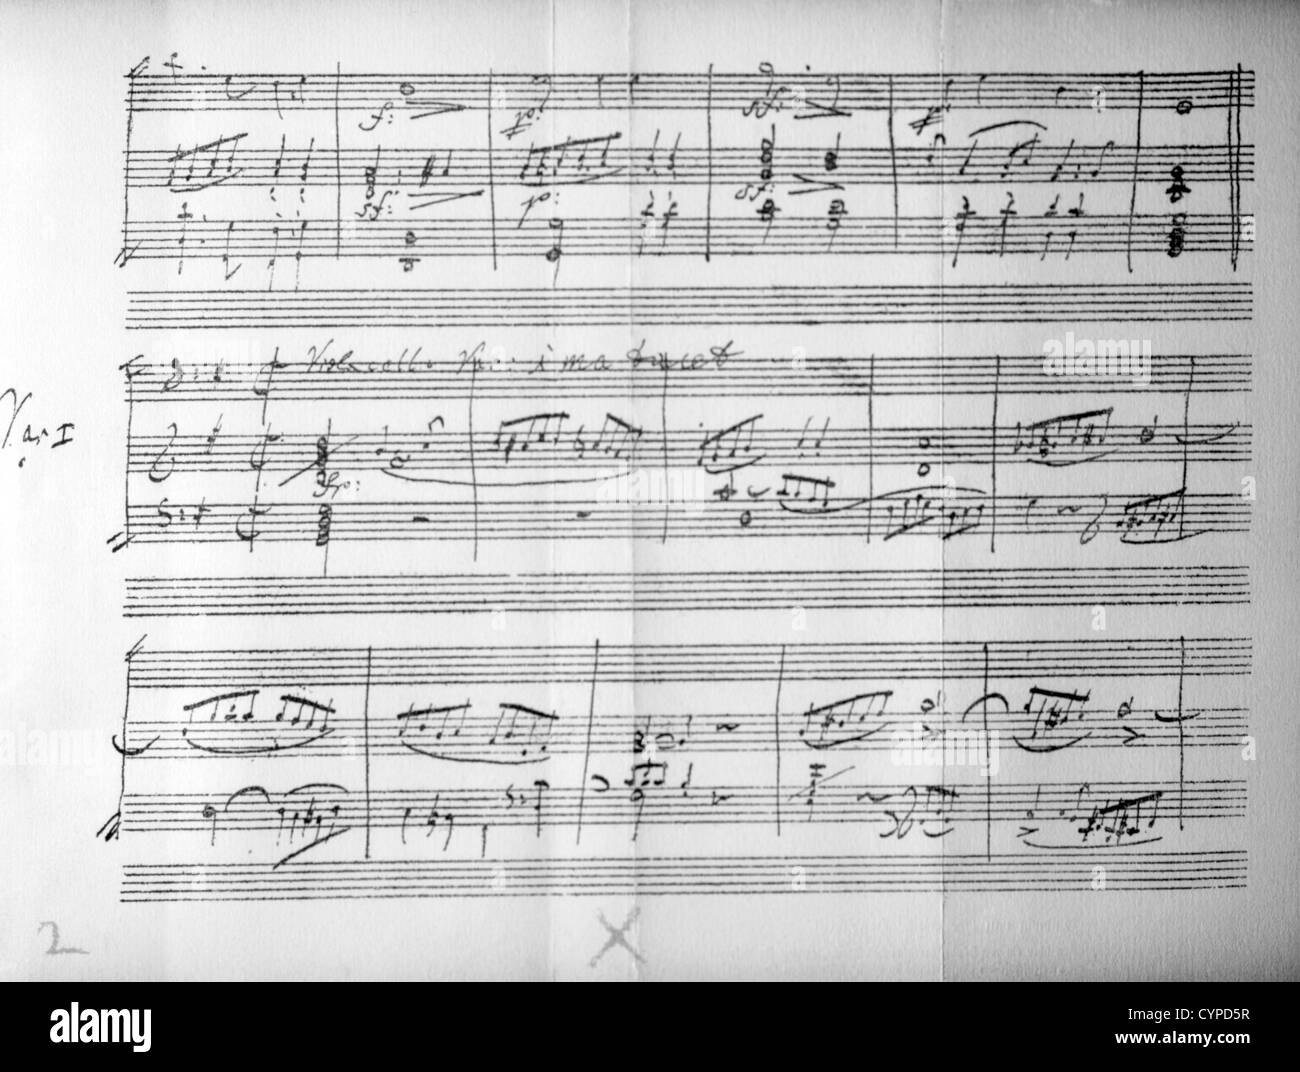 En musique de Beethoven, Variations sur un thème de Haendel Banque D'Images